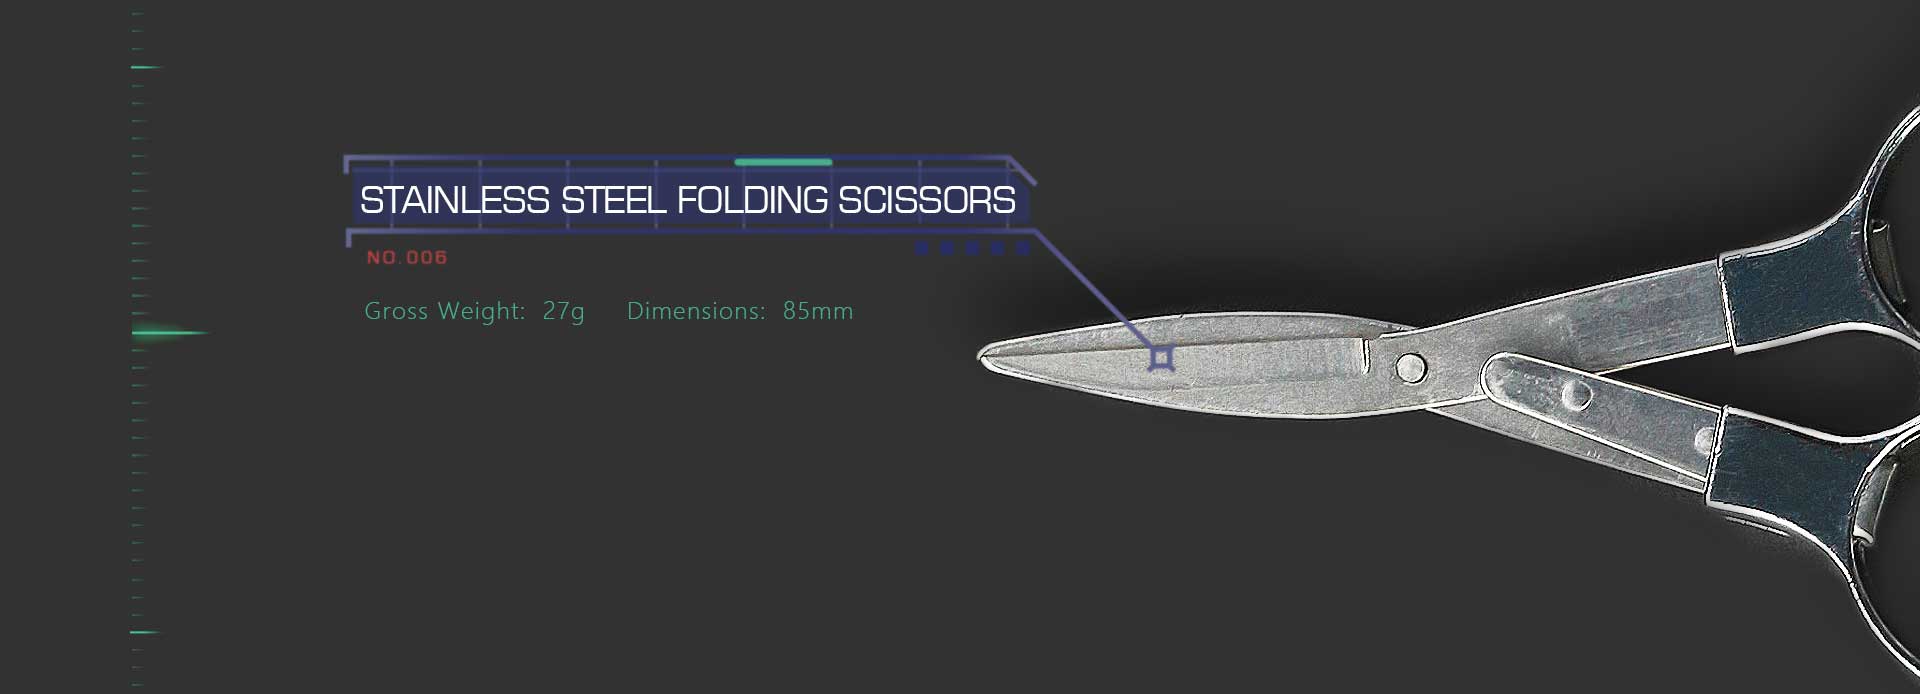 Advken Doctor Coil Tool Kit Stainless Steel Folding Scissors